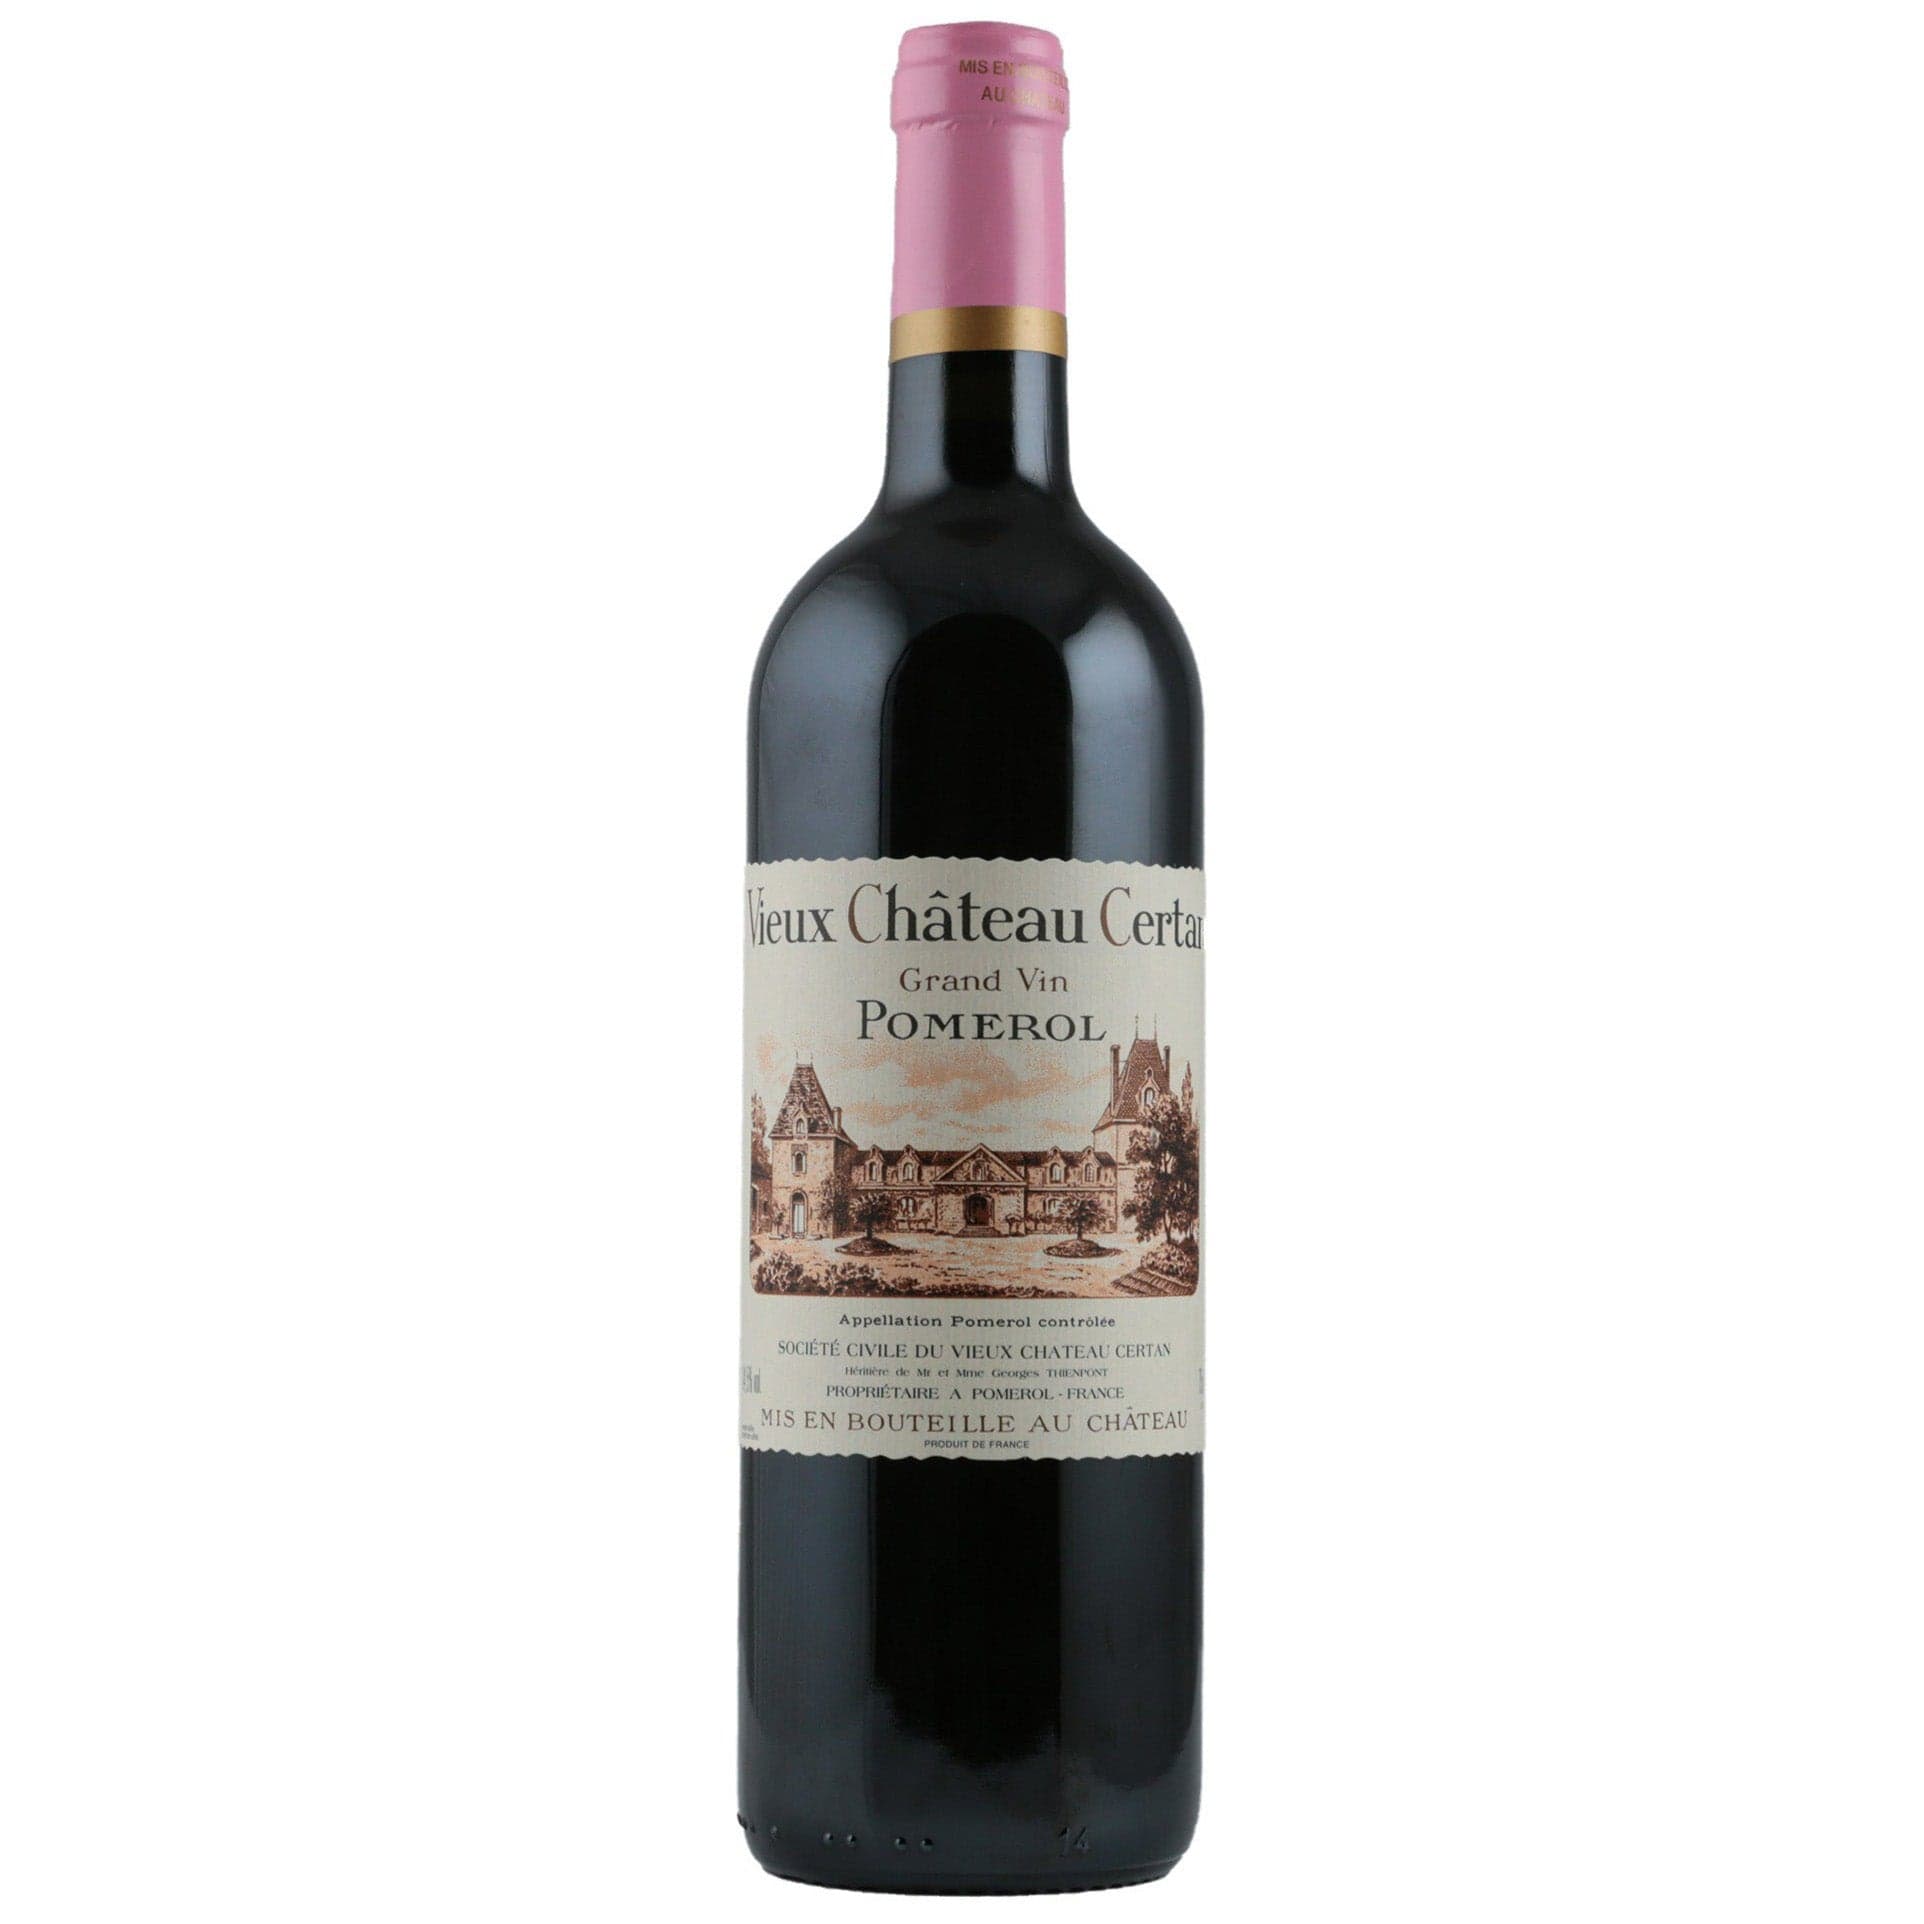 Single bottle of Red wine Vieux Château Certan, Vieux Château Certan, Pomerol, 2009 88% Merlot, 6% Cabernet Franc & 6% Cabernet Sauvignon